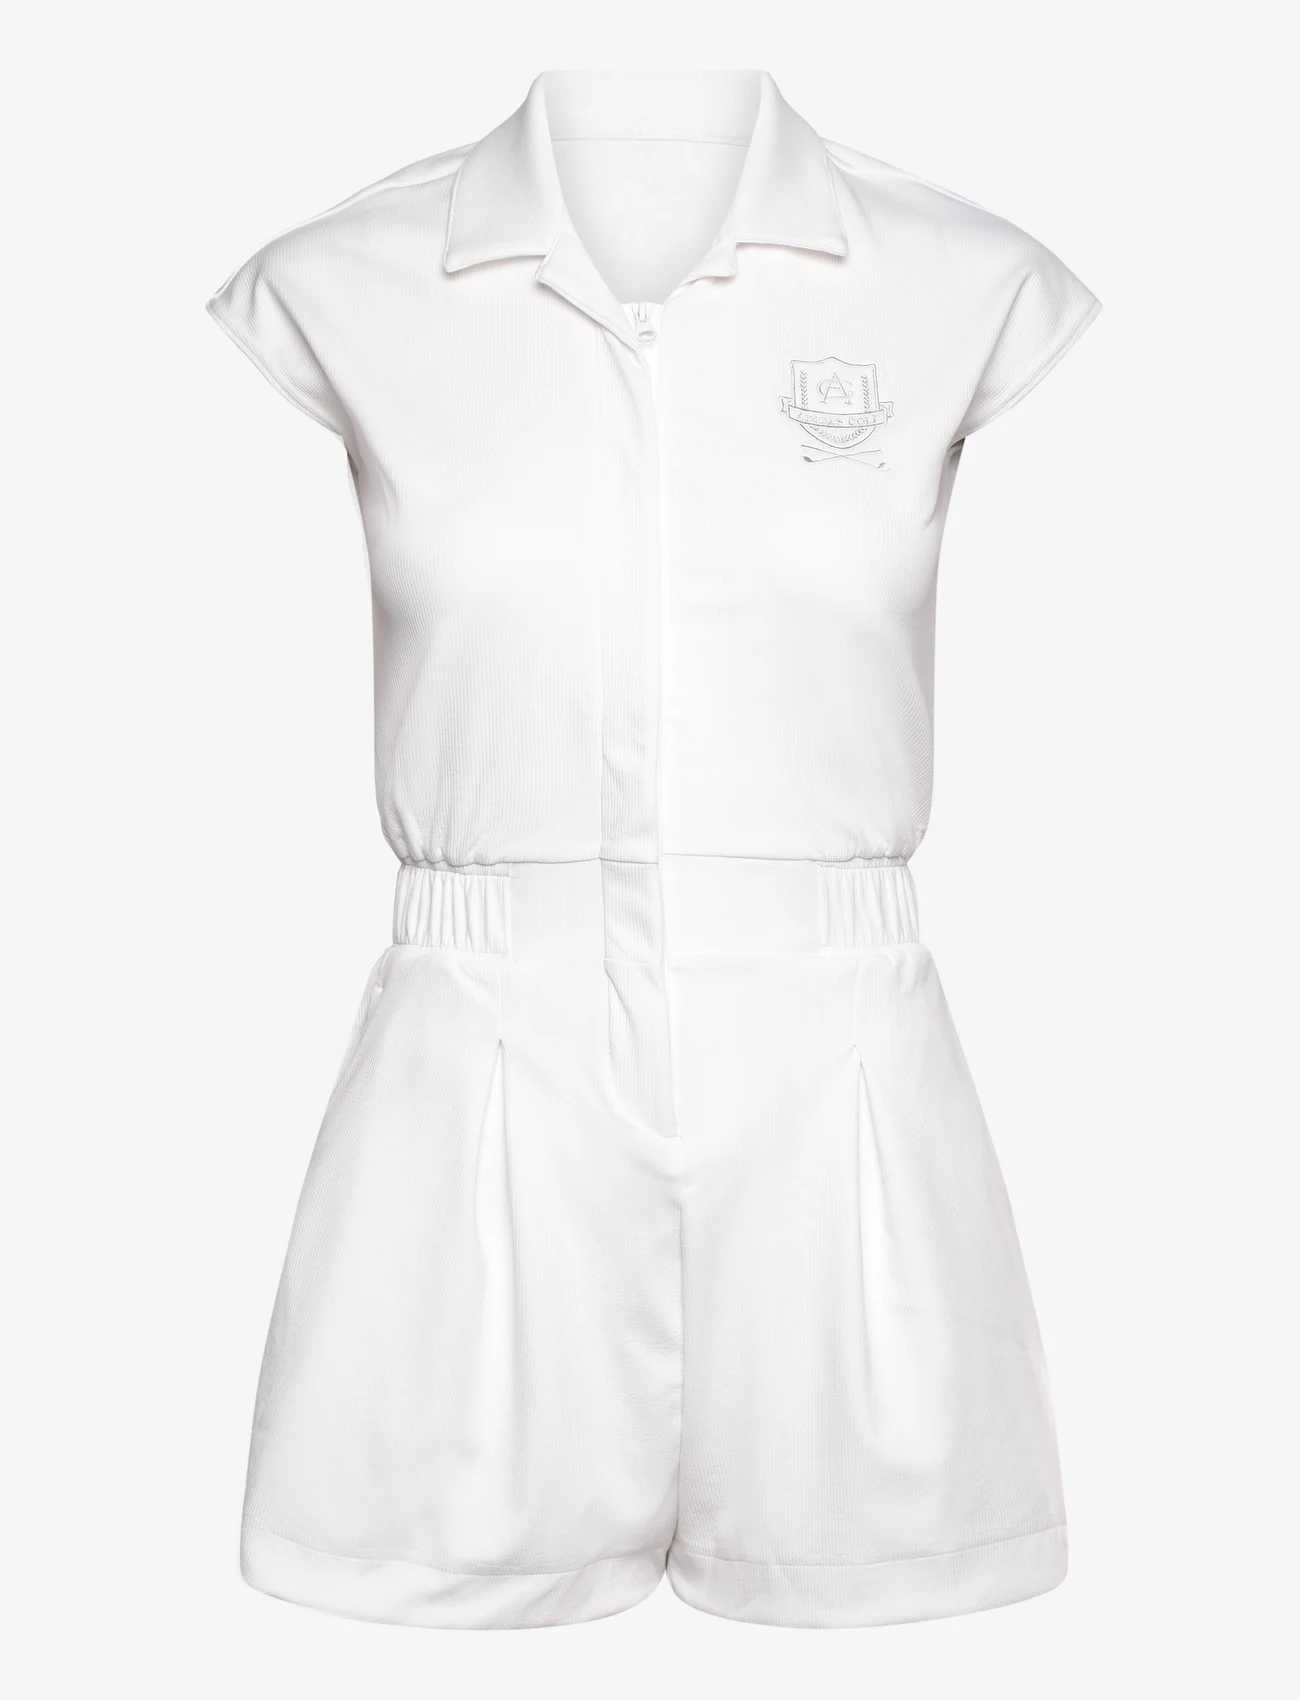 adidas Golf - W GO-TO RMPR - marškinių tipo suknelės - white - 0